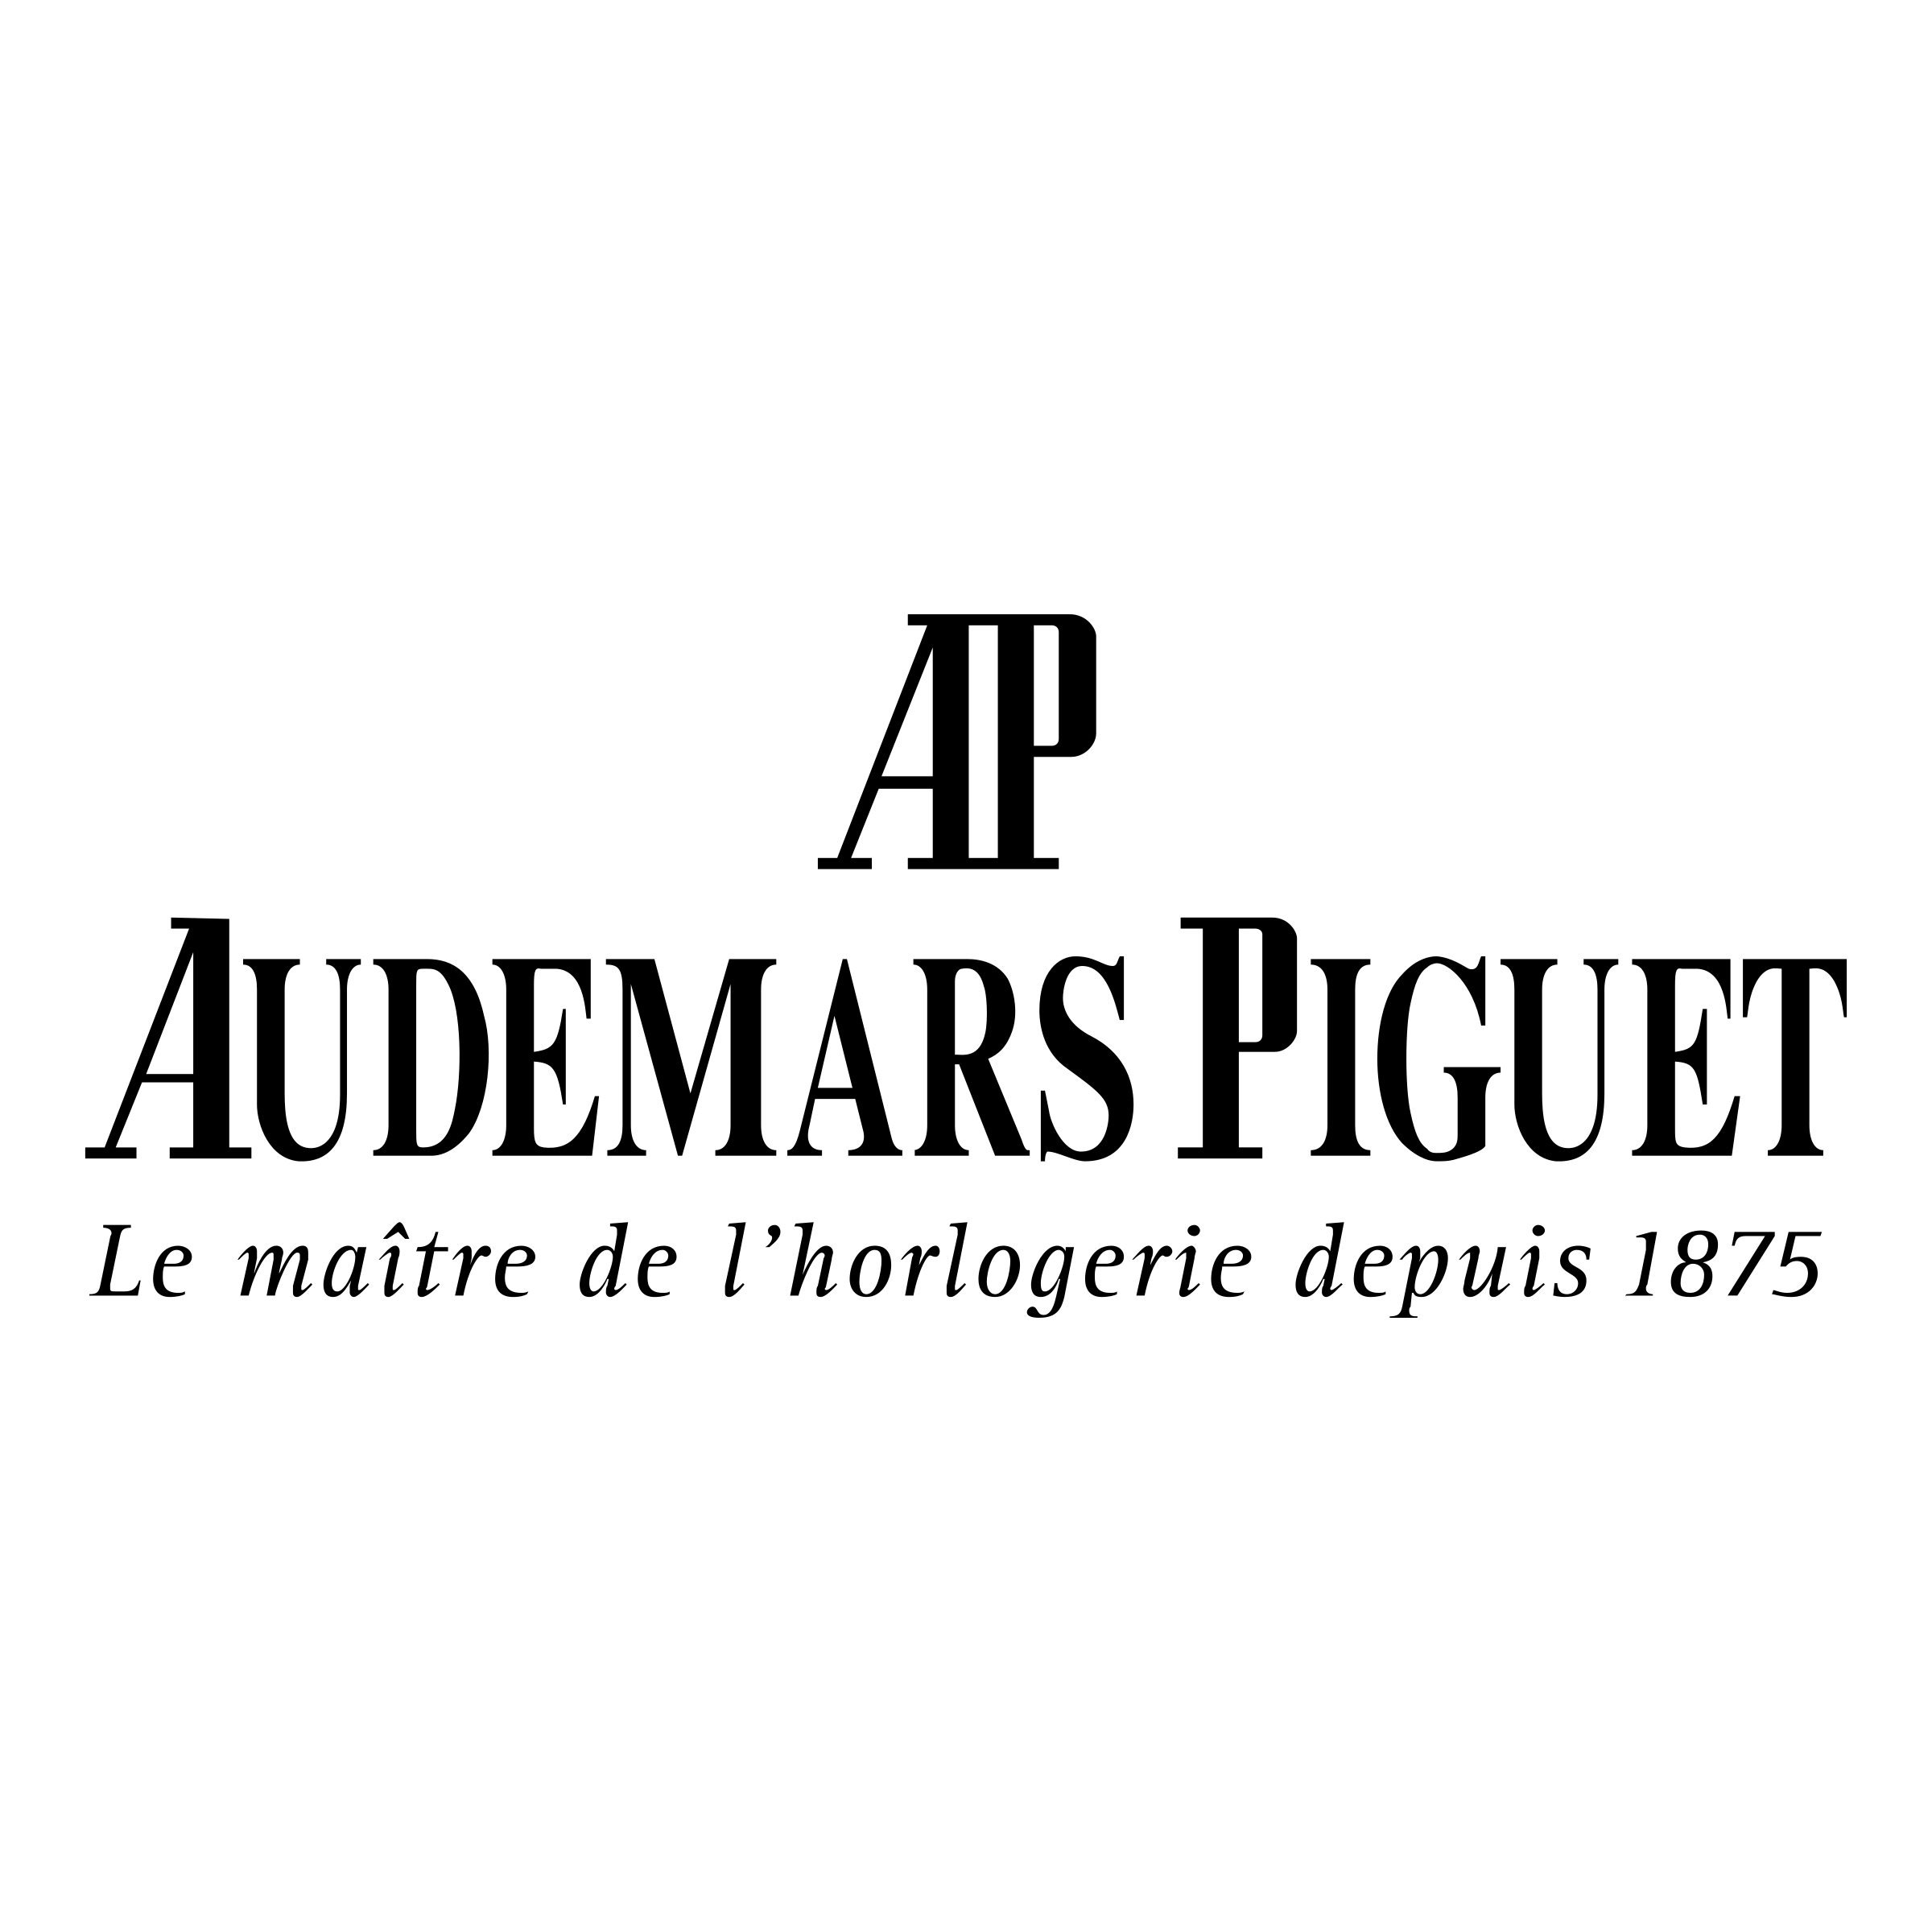 audemars piguet black logo